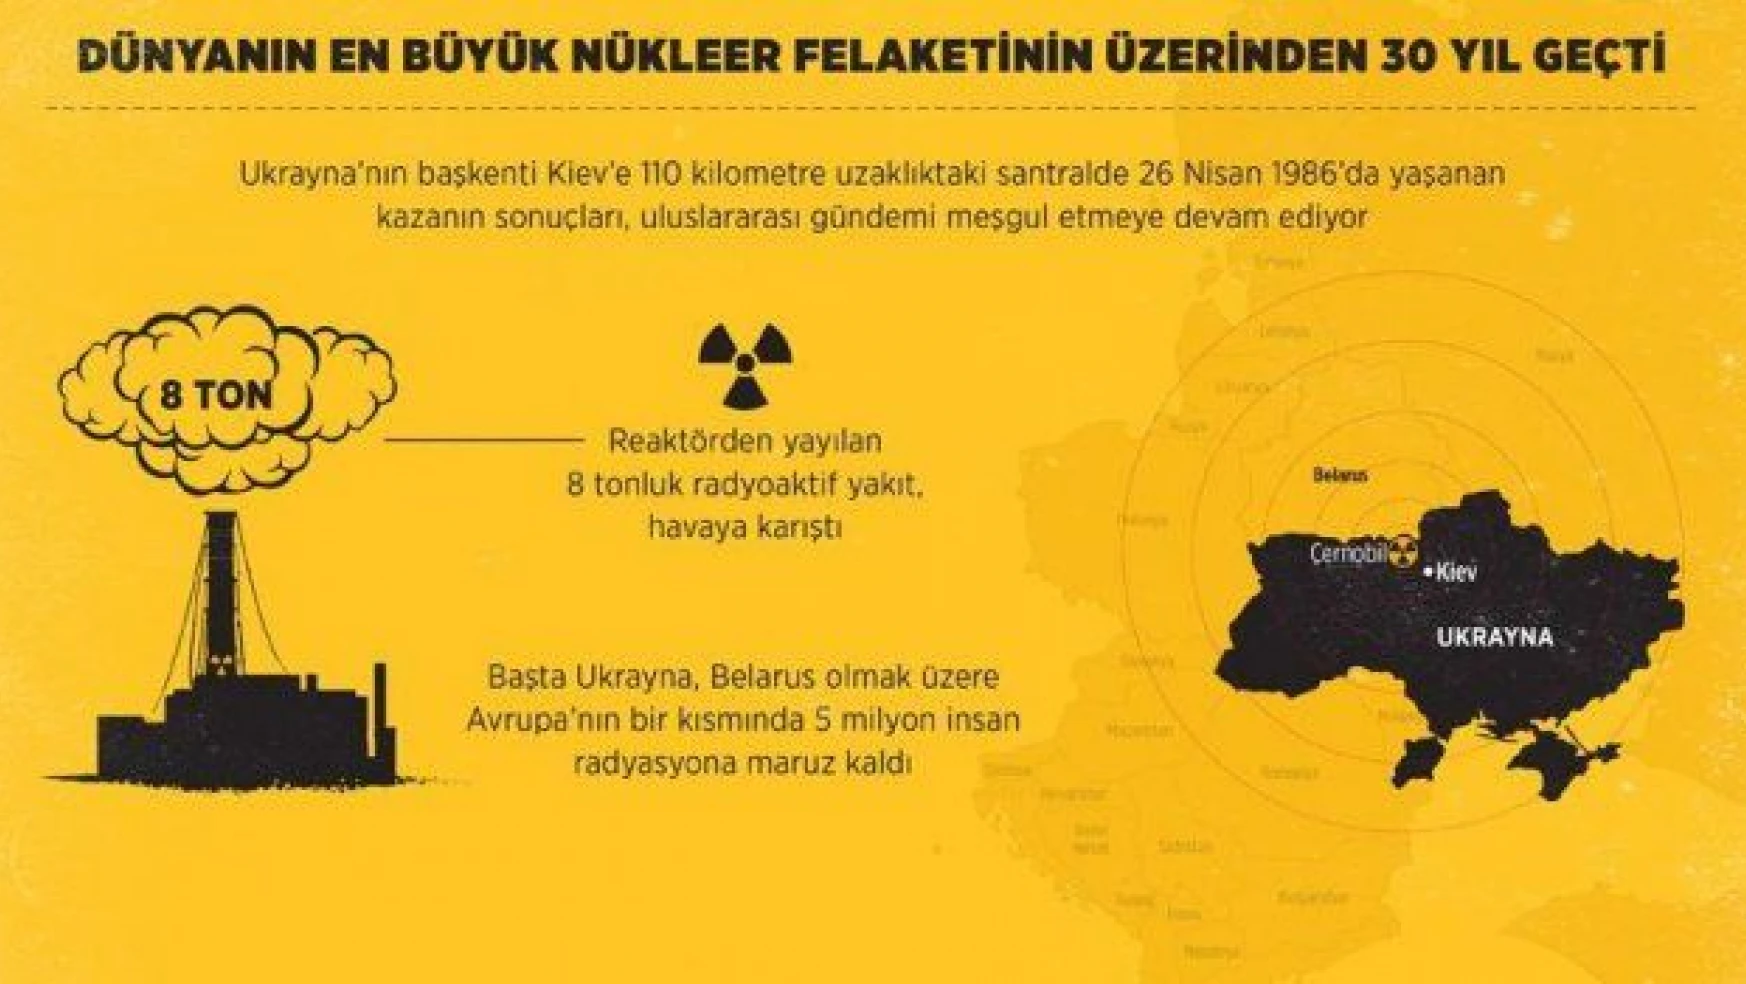 Dünyanın en büyük nükleer felaketinin üzerinden 30 yıl geçti